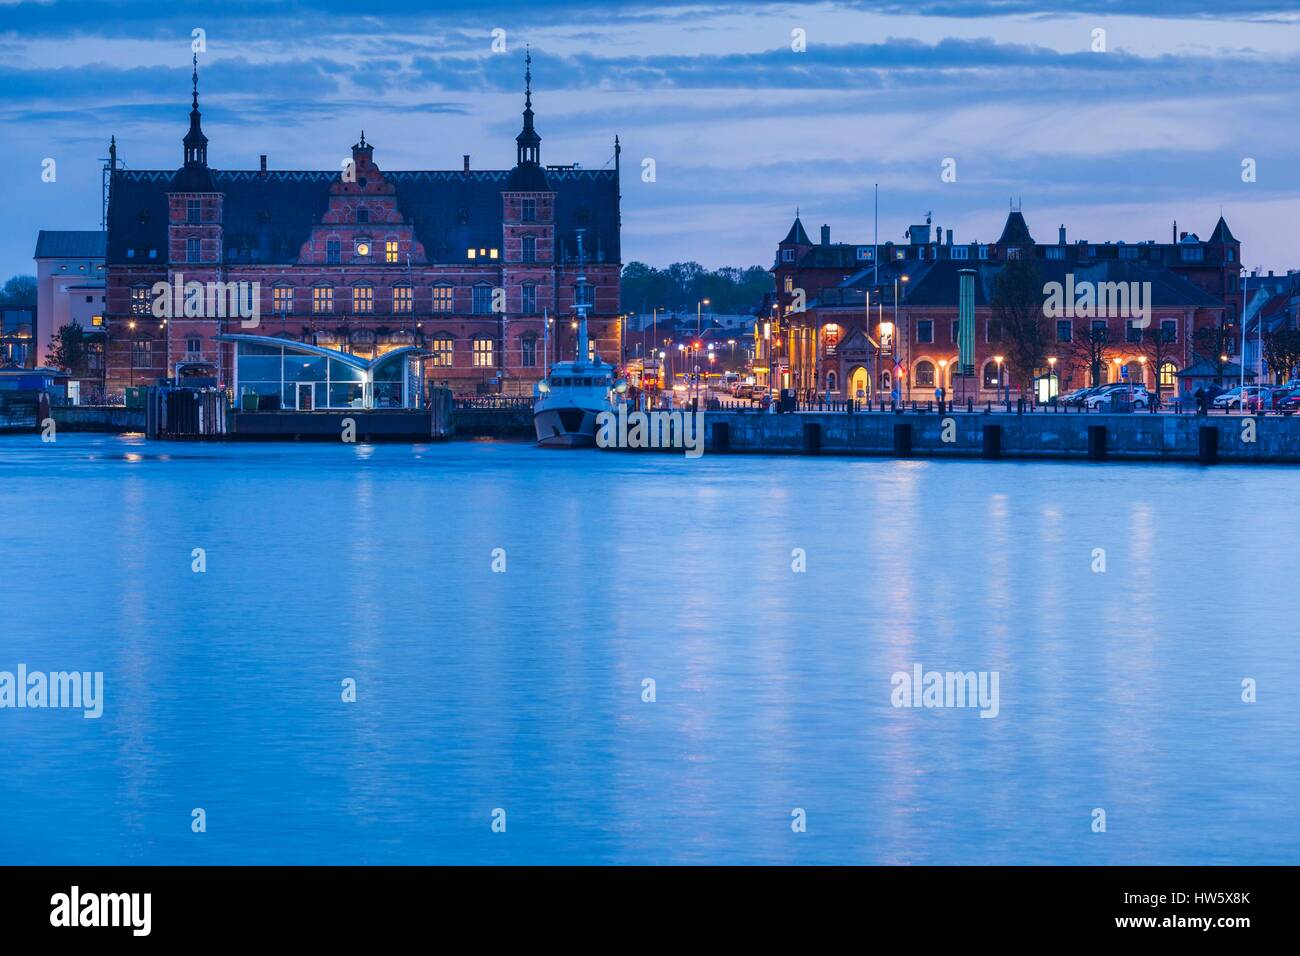 Denmark, Zealand, Helsingor, town view, dusk Stock Photo